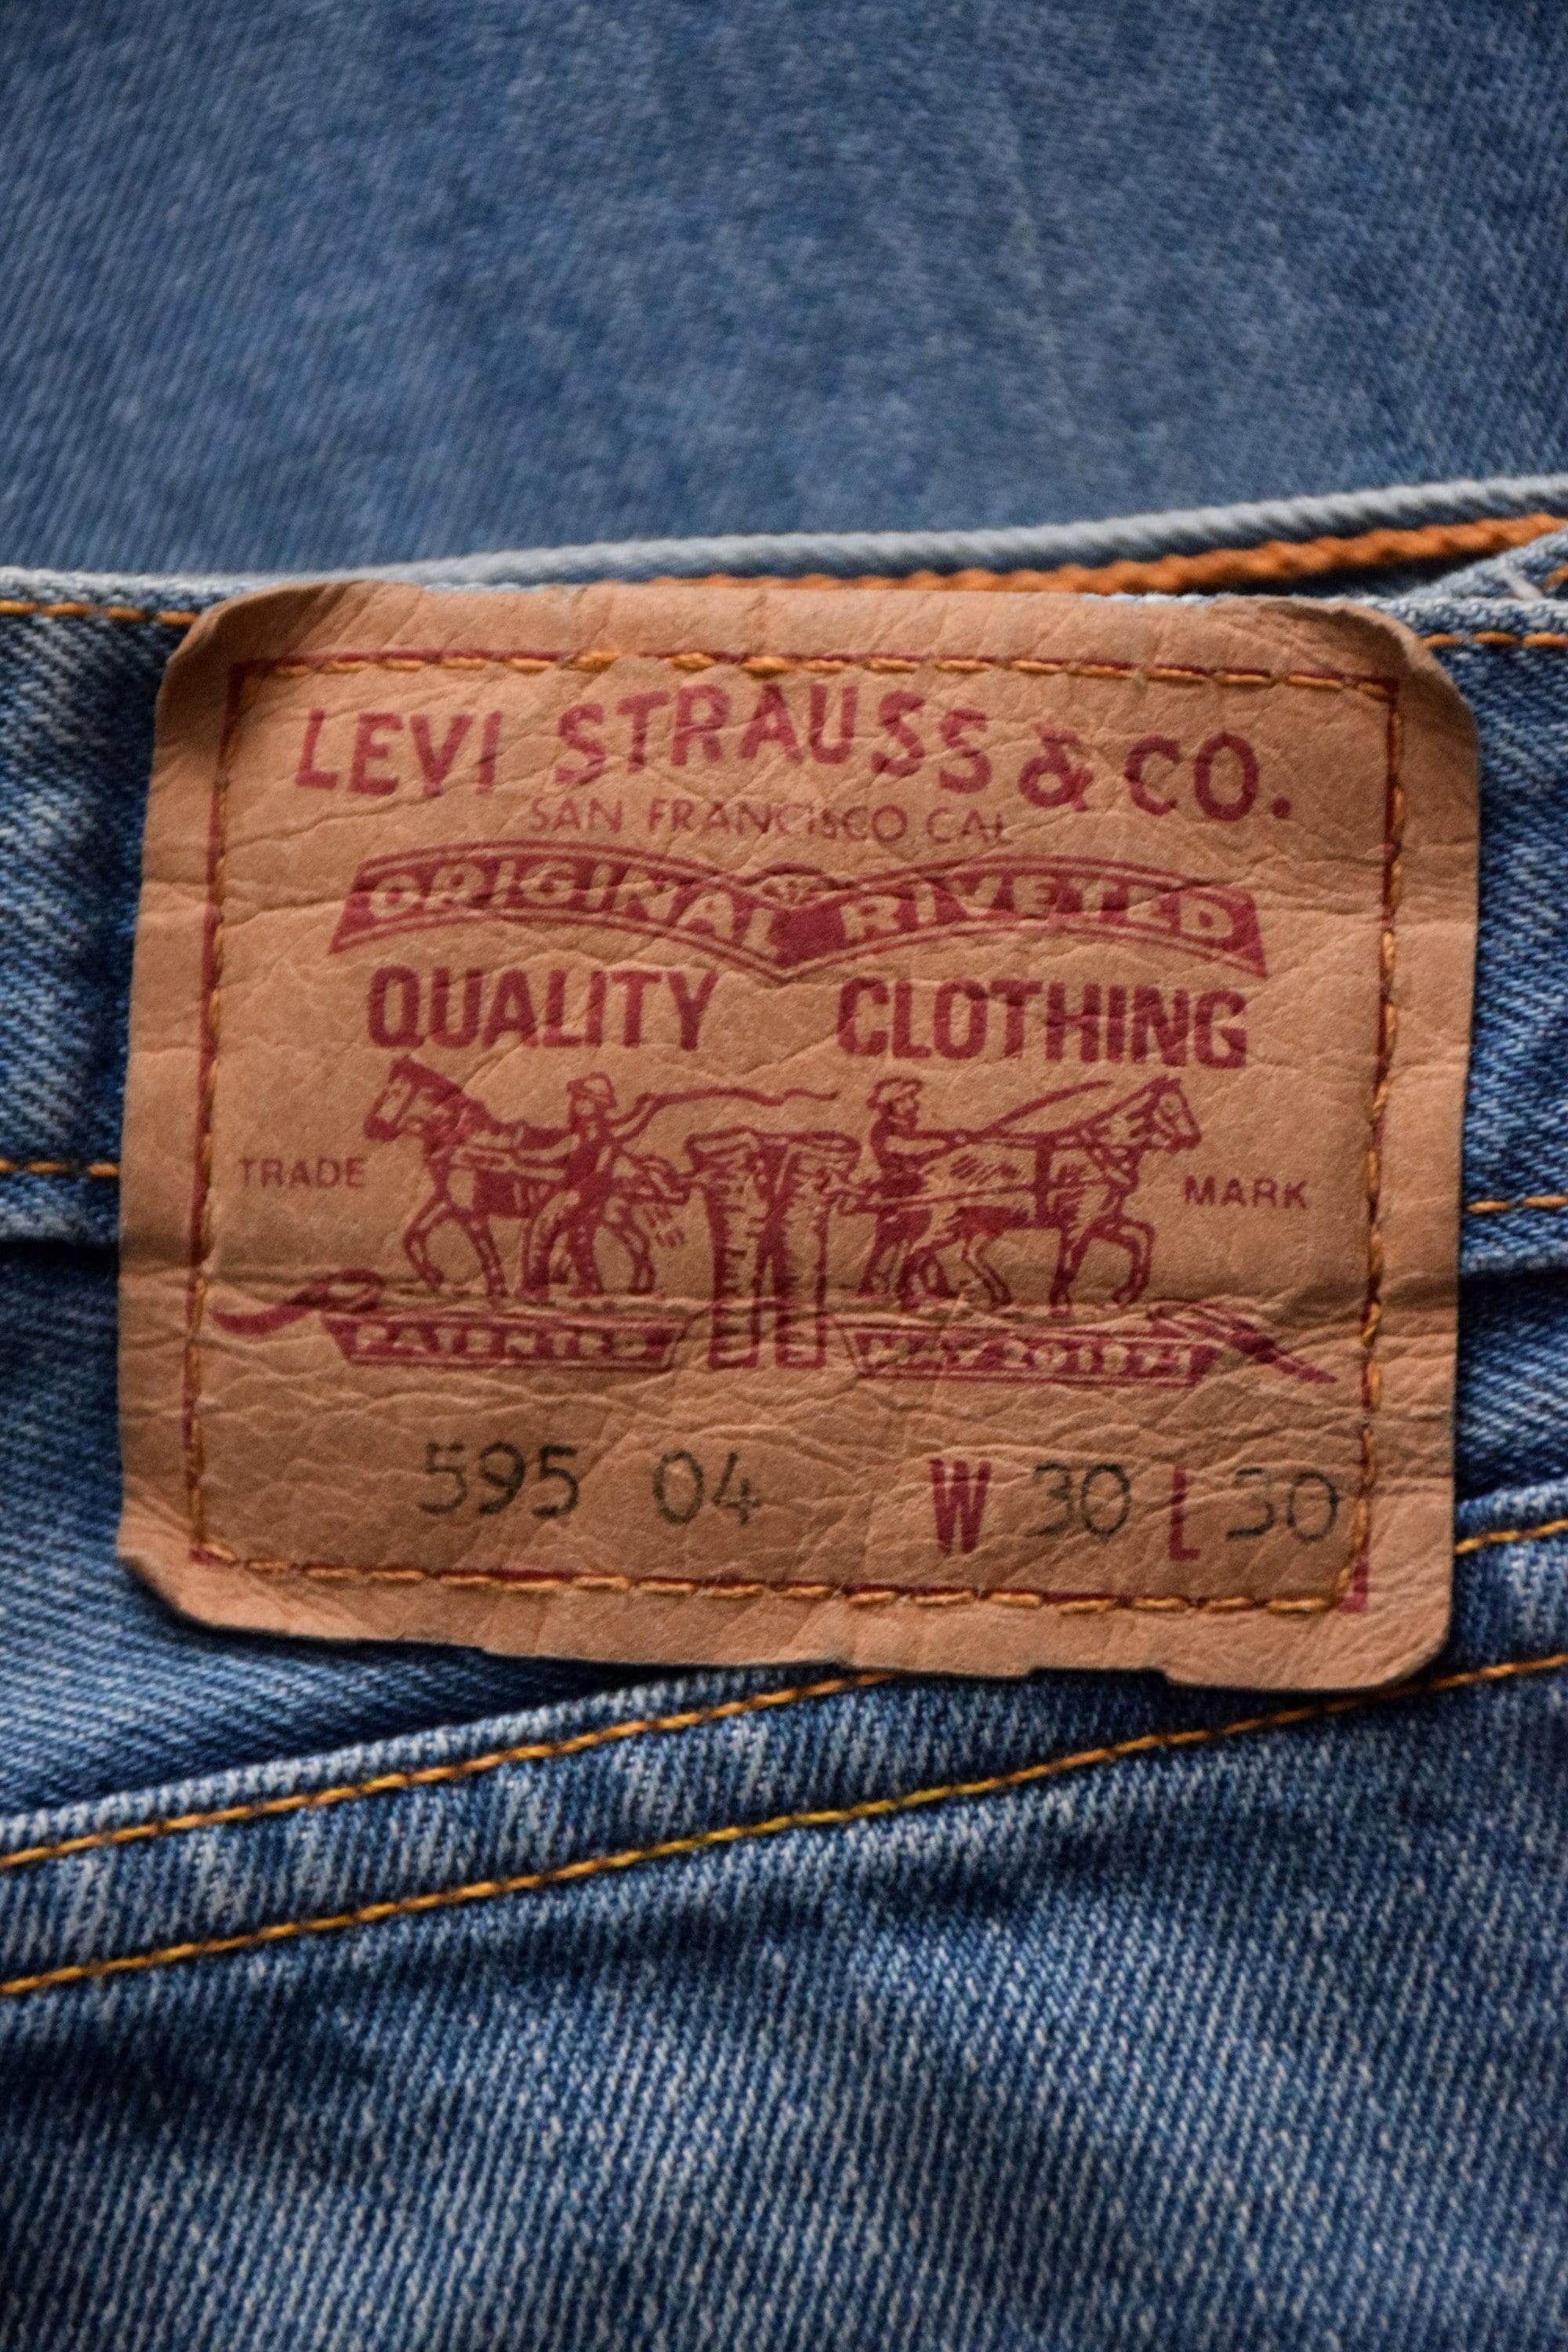 Vintage 90s Levi's Blue Jeans Women 595 04 Blue Slim - Etsy